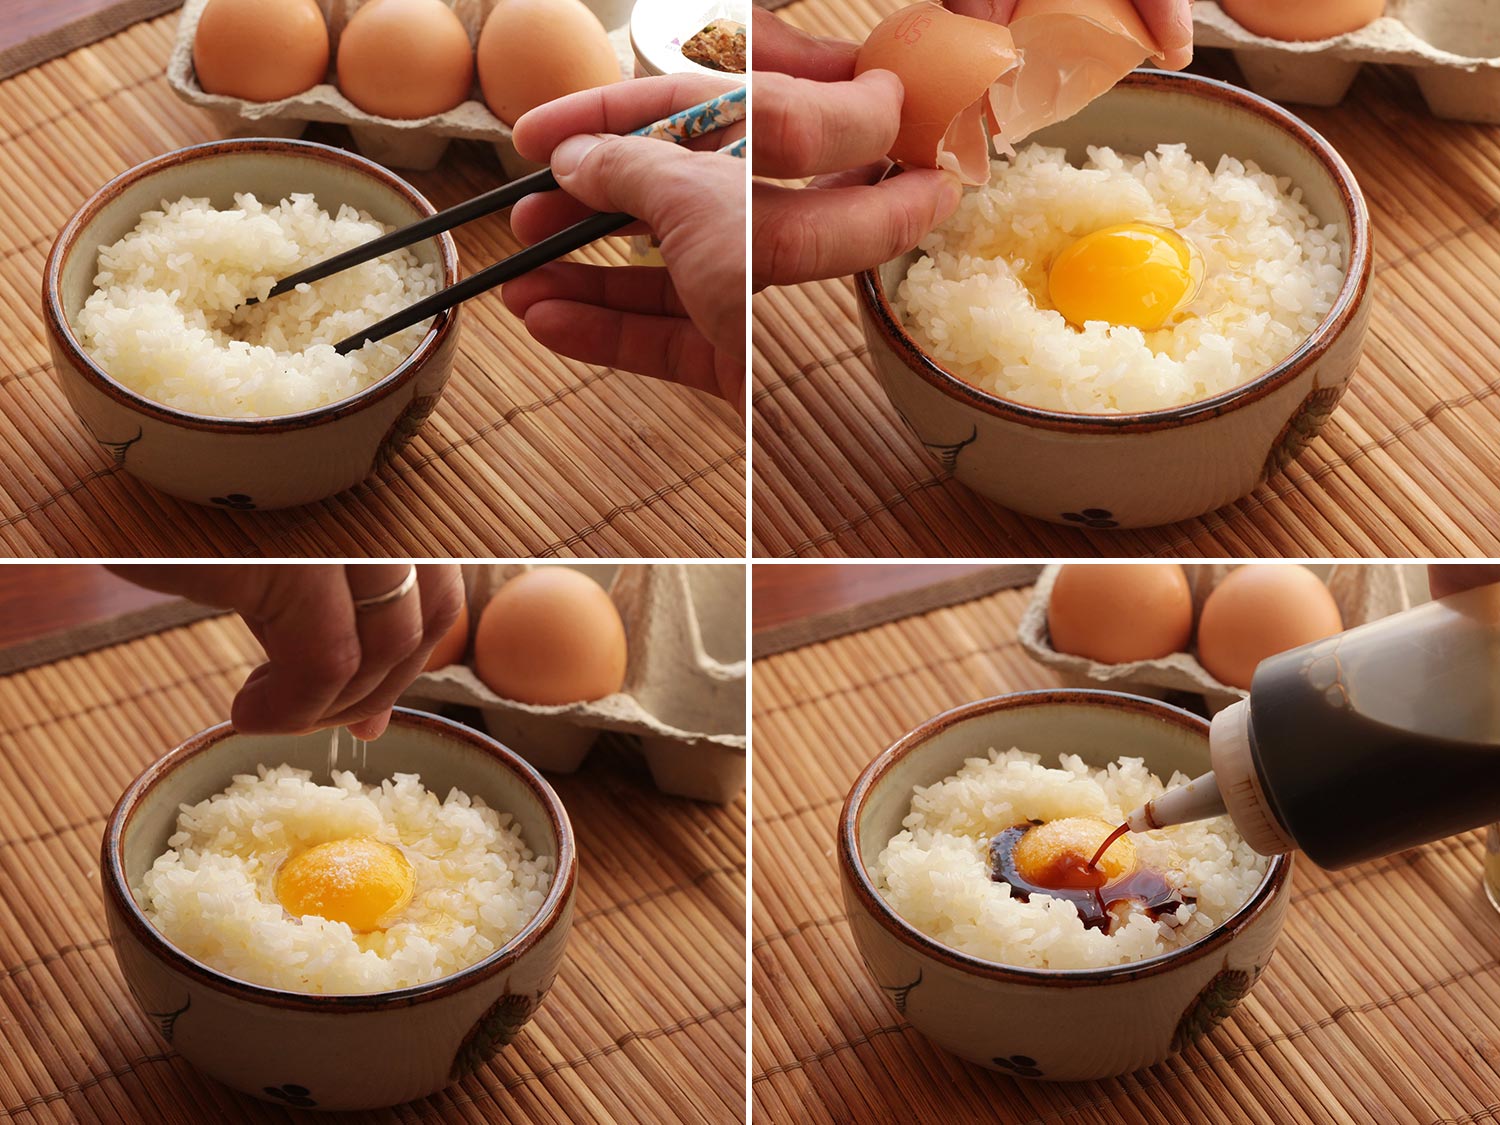 Cơm trứng sống với xì dầu, món ăn tưởng kinh khủng nhưng người Nhật lại nghiện ăn - 1